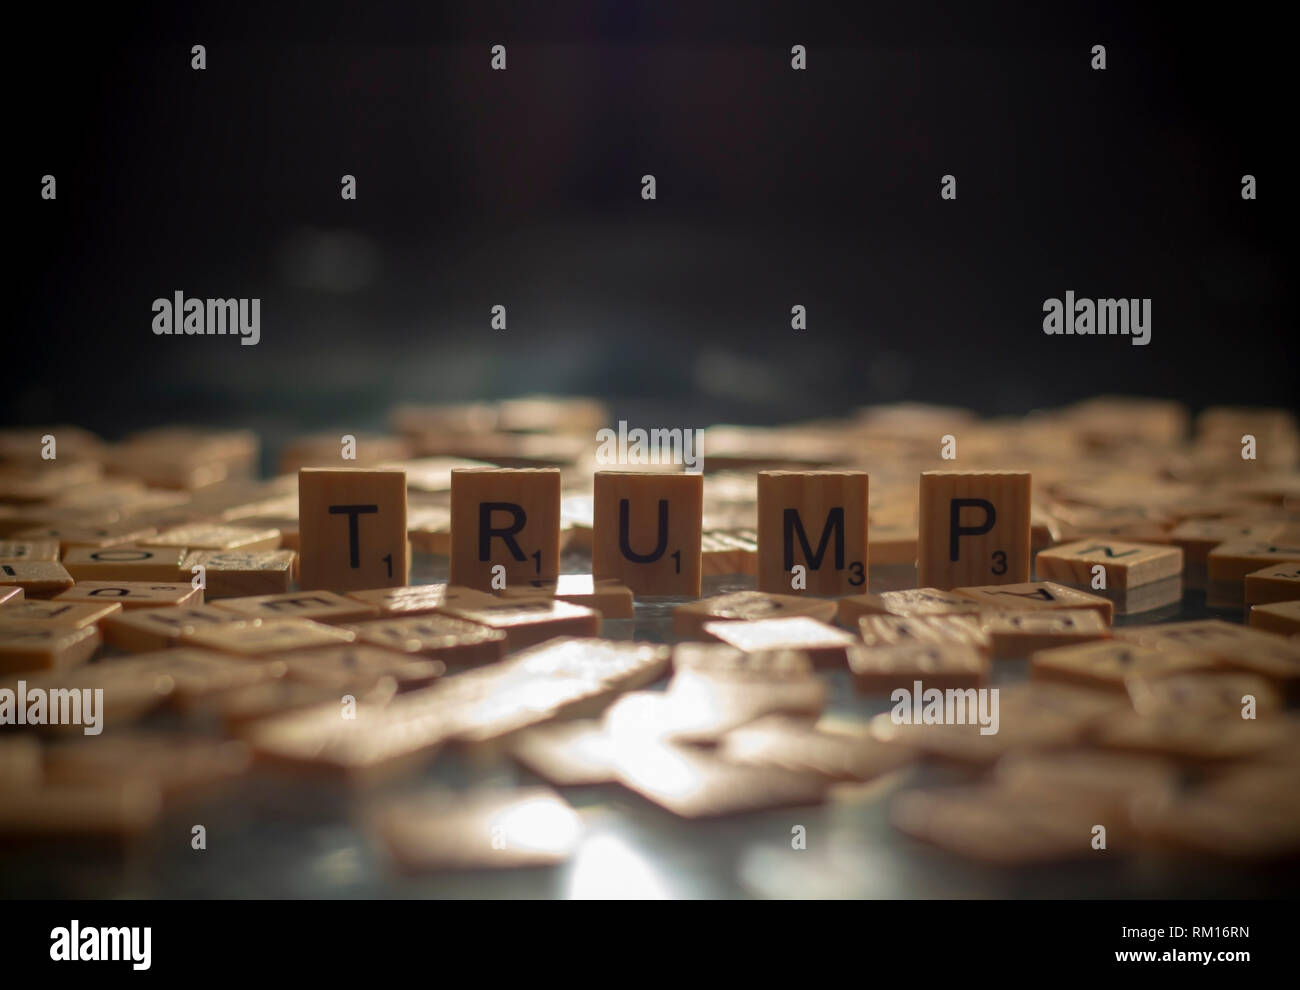 Trump in lettere di Scrabble Foto Stock